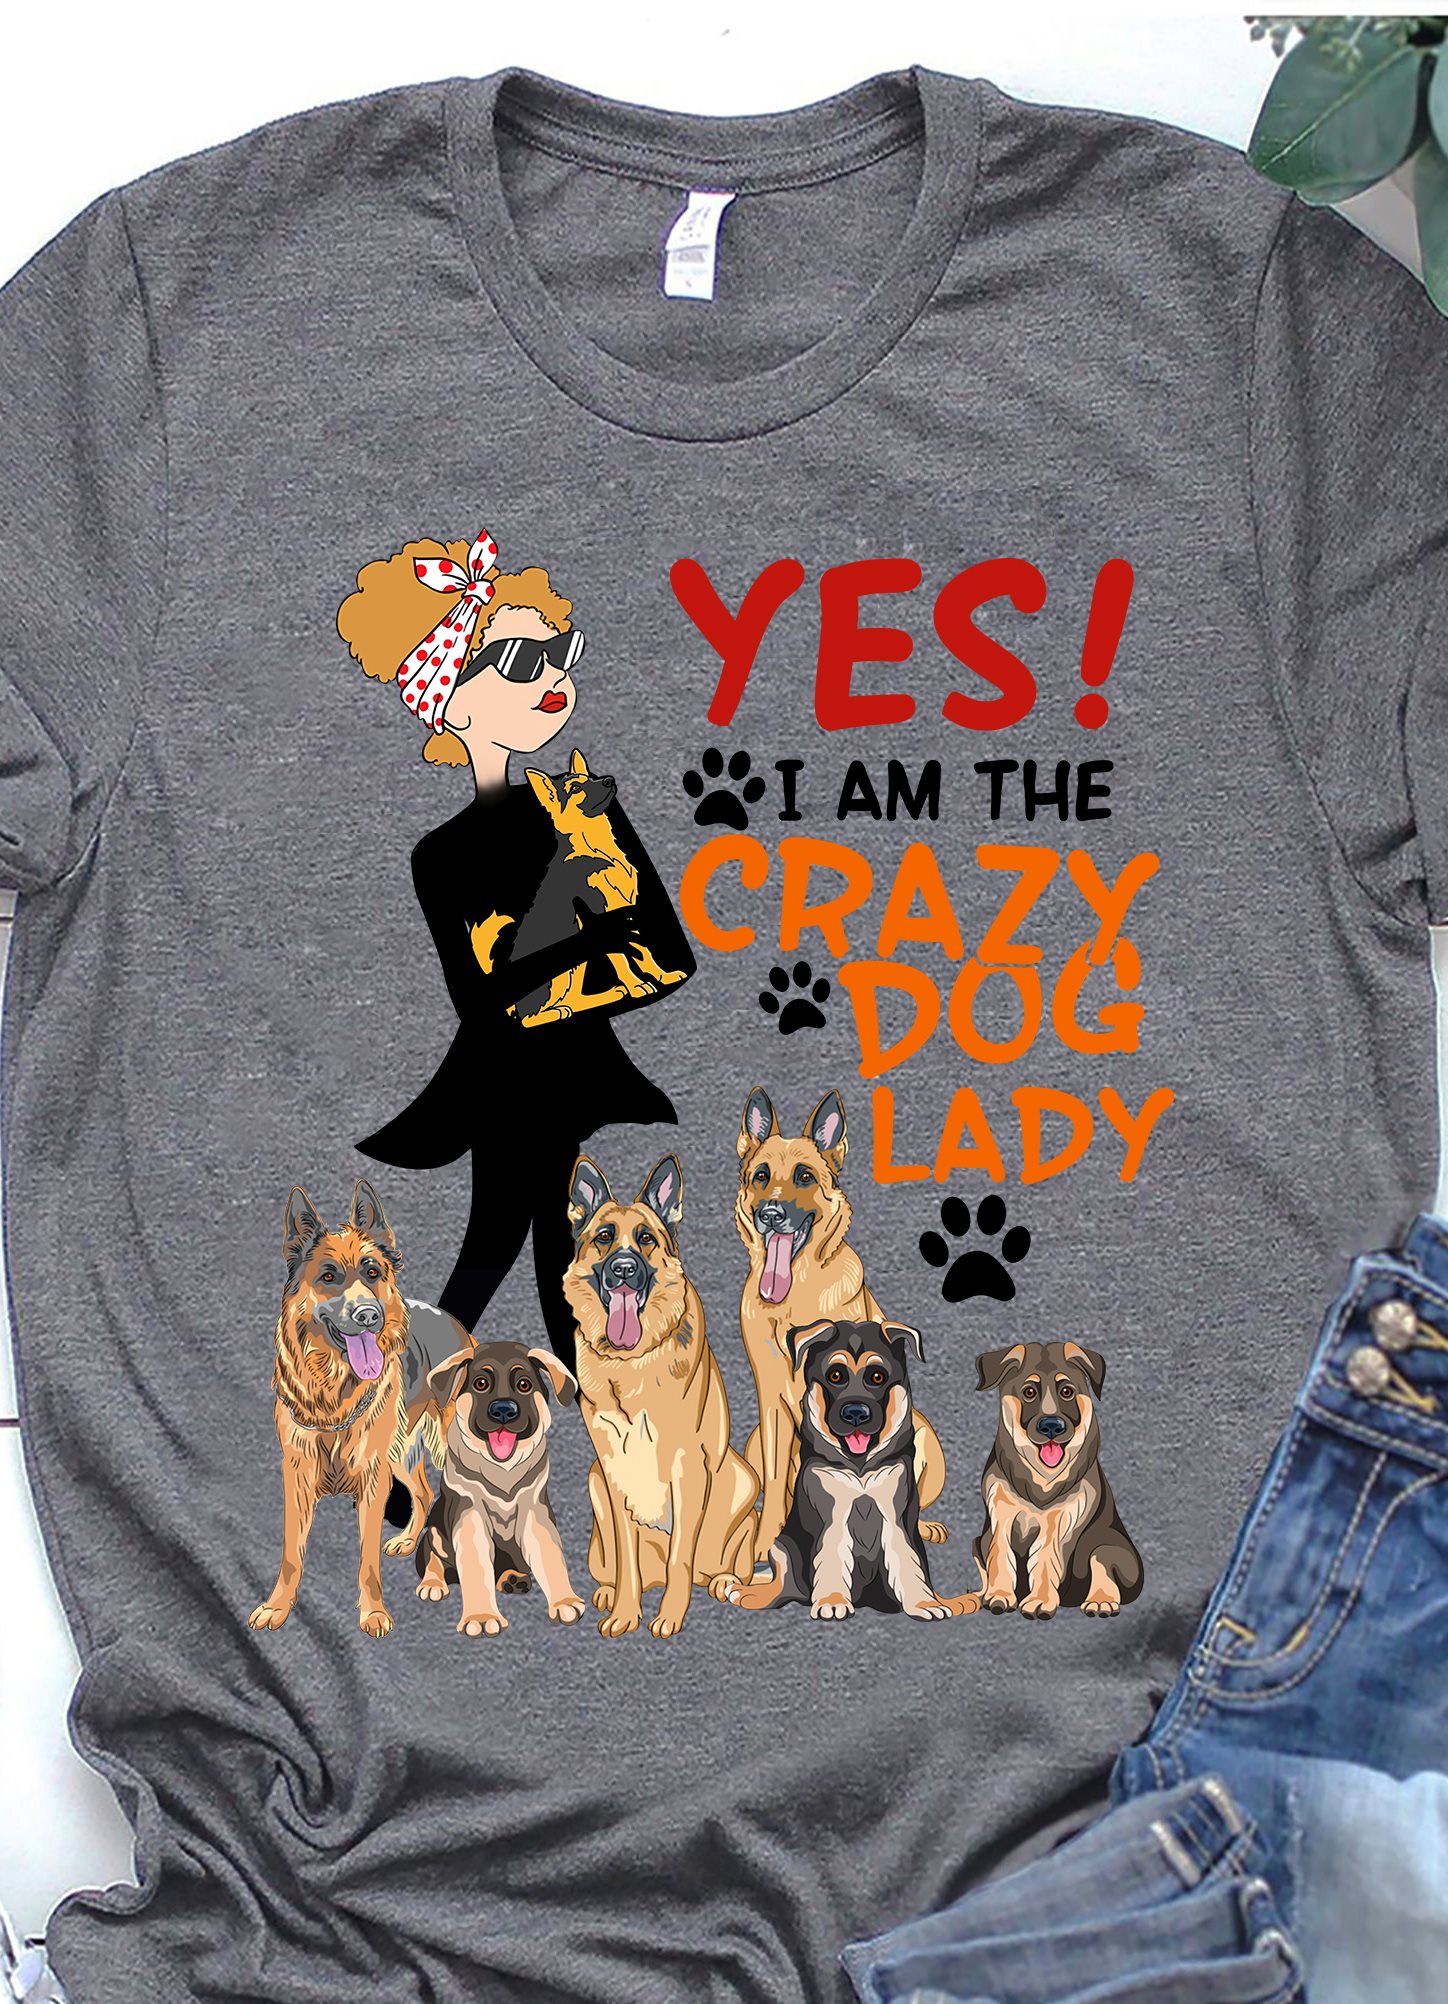 Yes I am the crazy dog lady - Shepherd dog